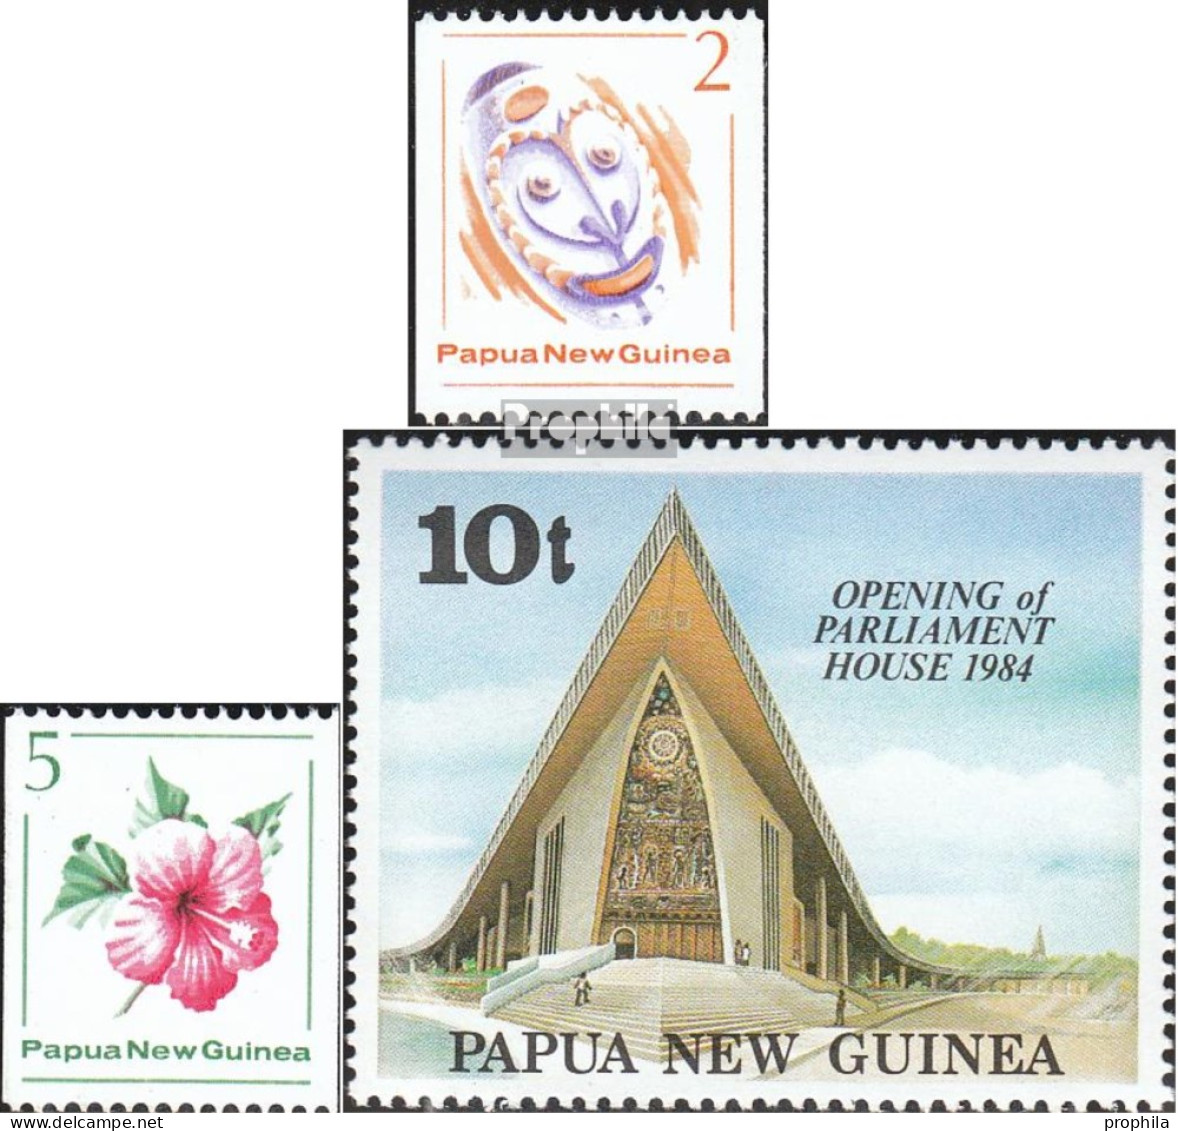 Papua-Neuguinea 407-408,477 (kompl.Ausg.) Postfrisch 1981/1984 Rollenmarken, Parlament - Papua New Guinea